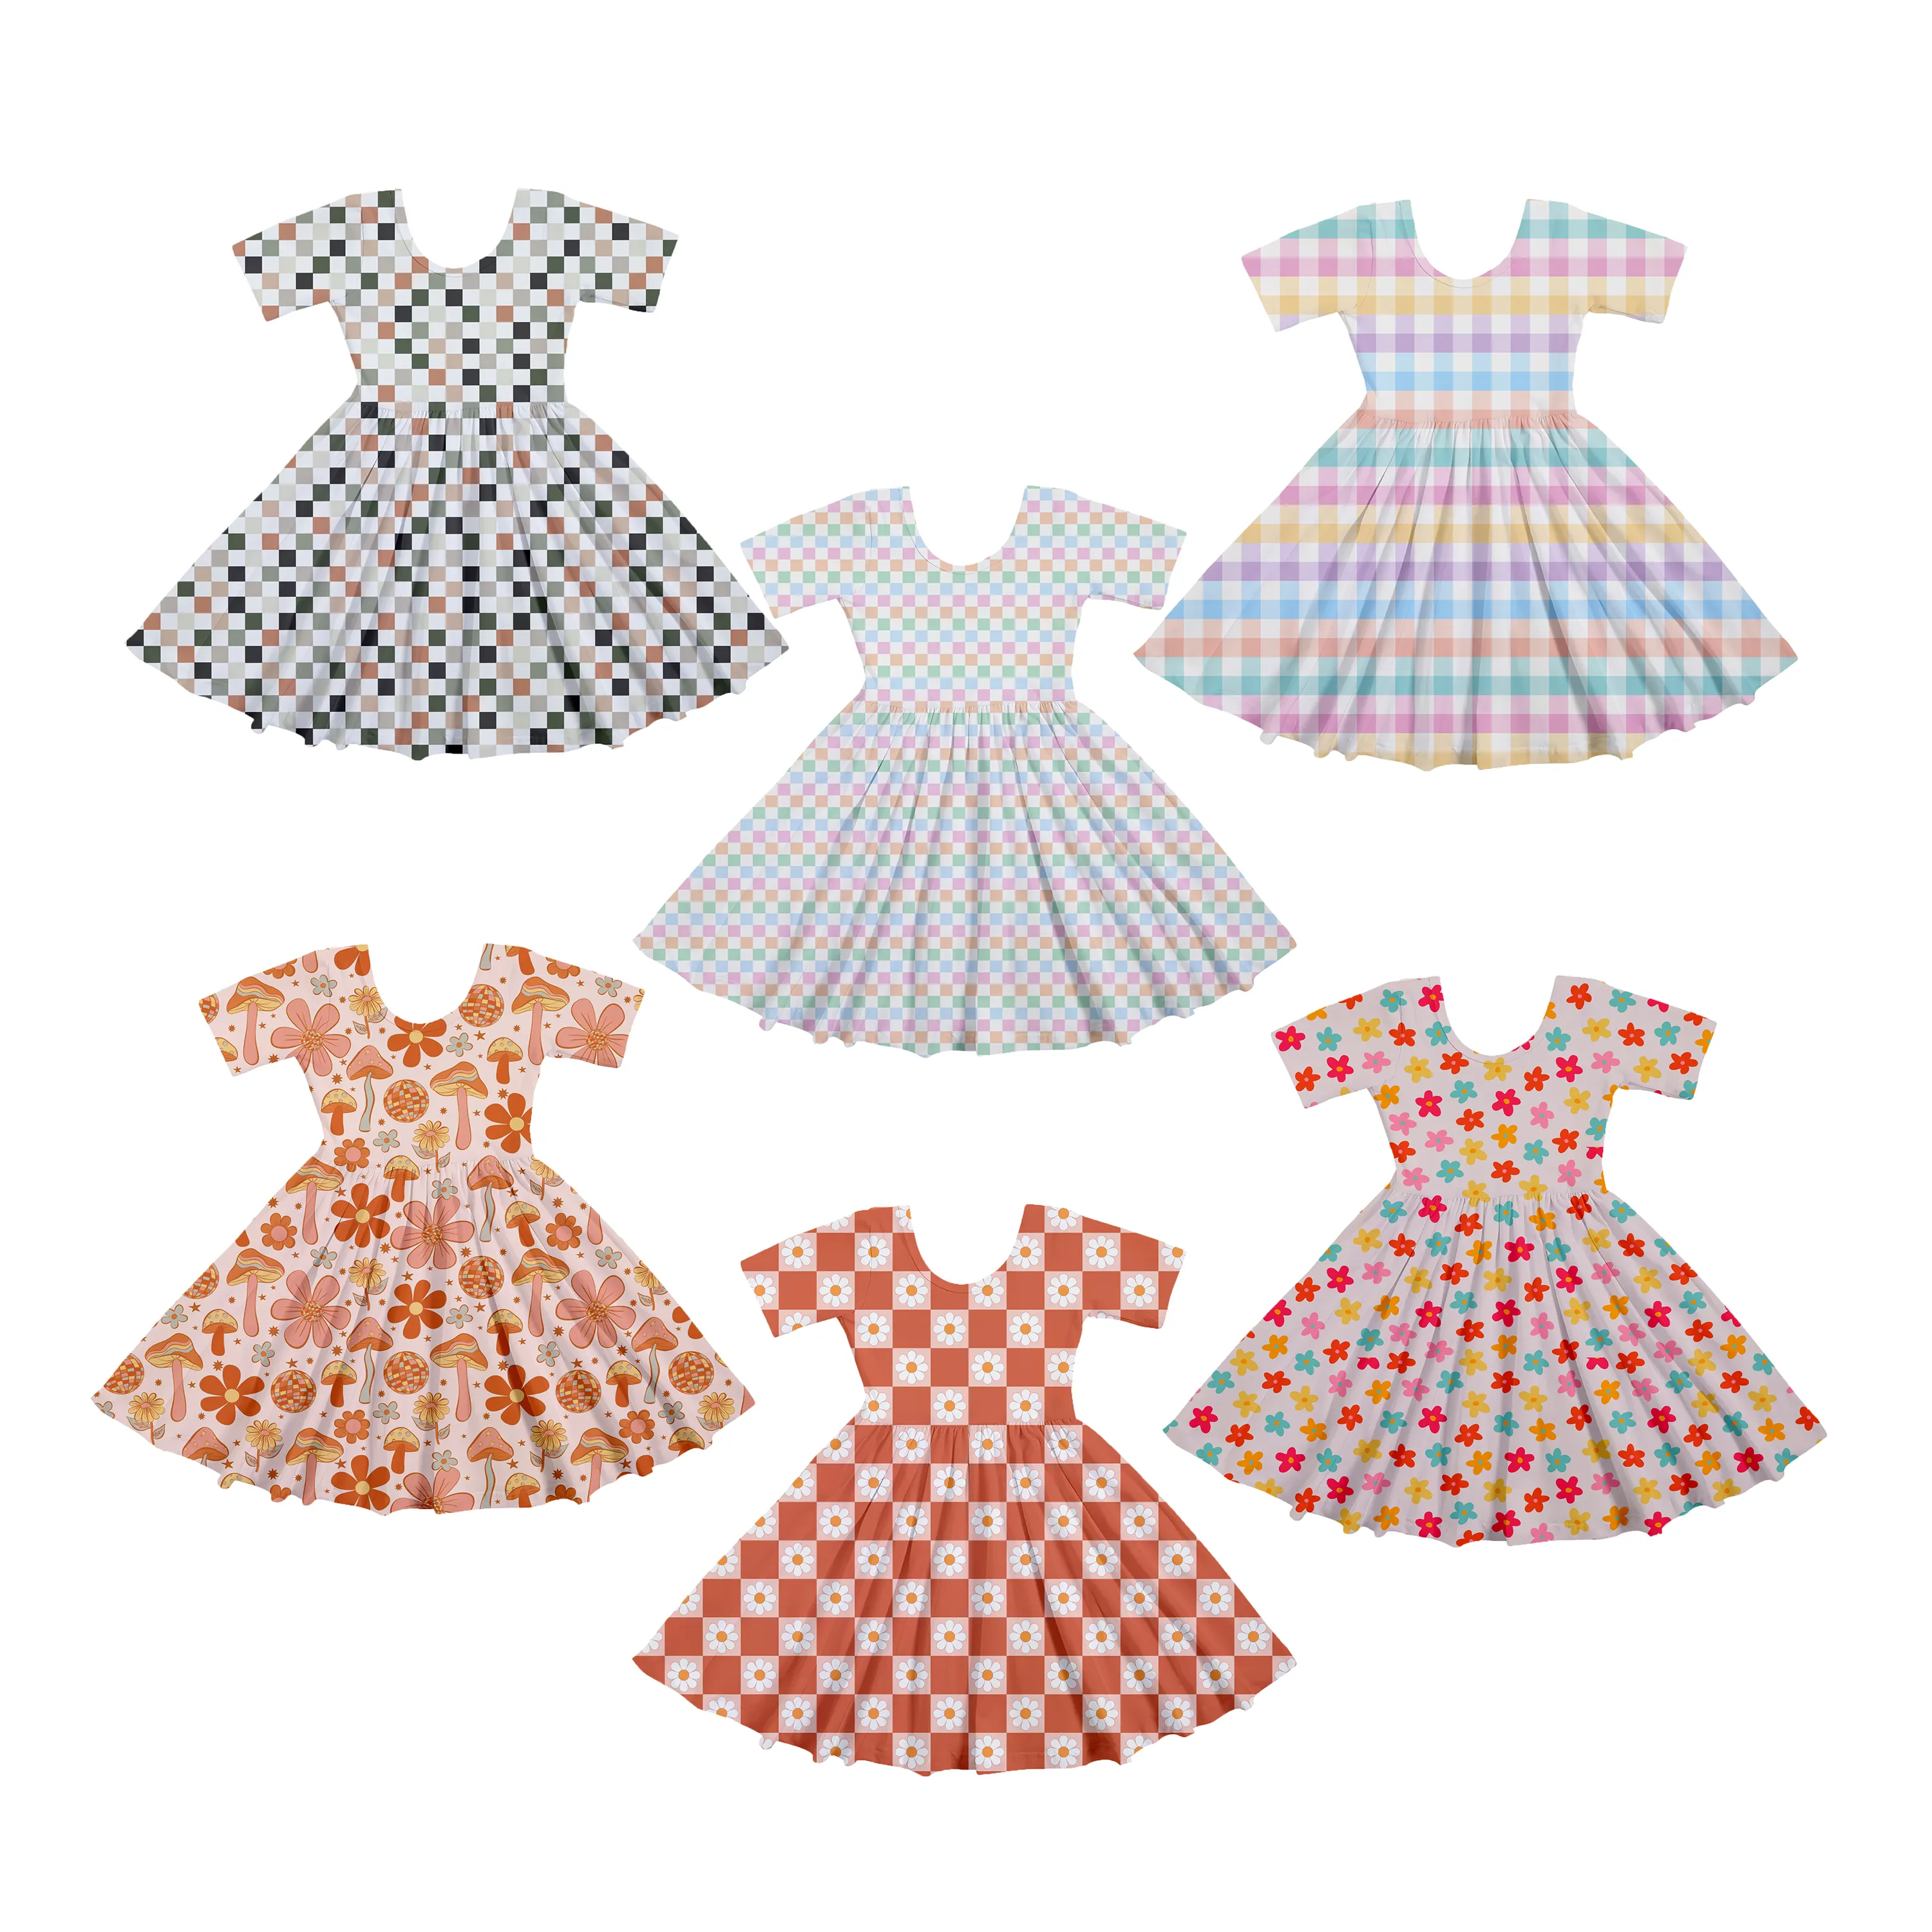 Moda Nuevos vestidos de flores para niñas de manga corta sobre estampado niños vestido de verano vestidos infantiles para niñas